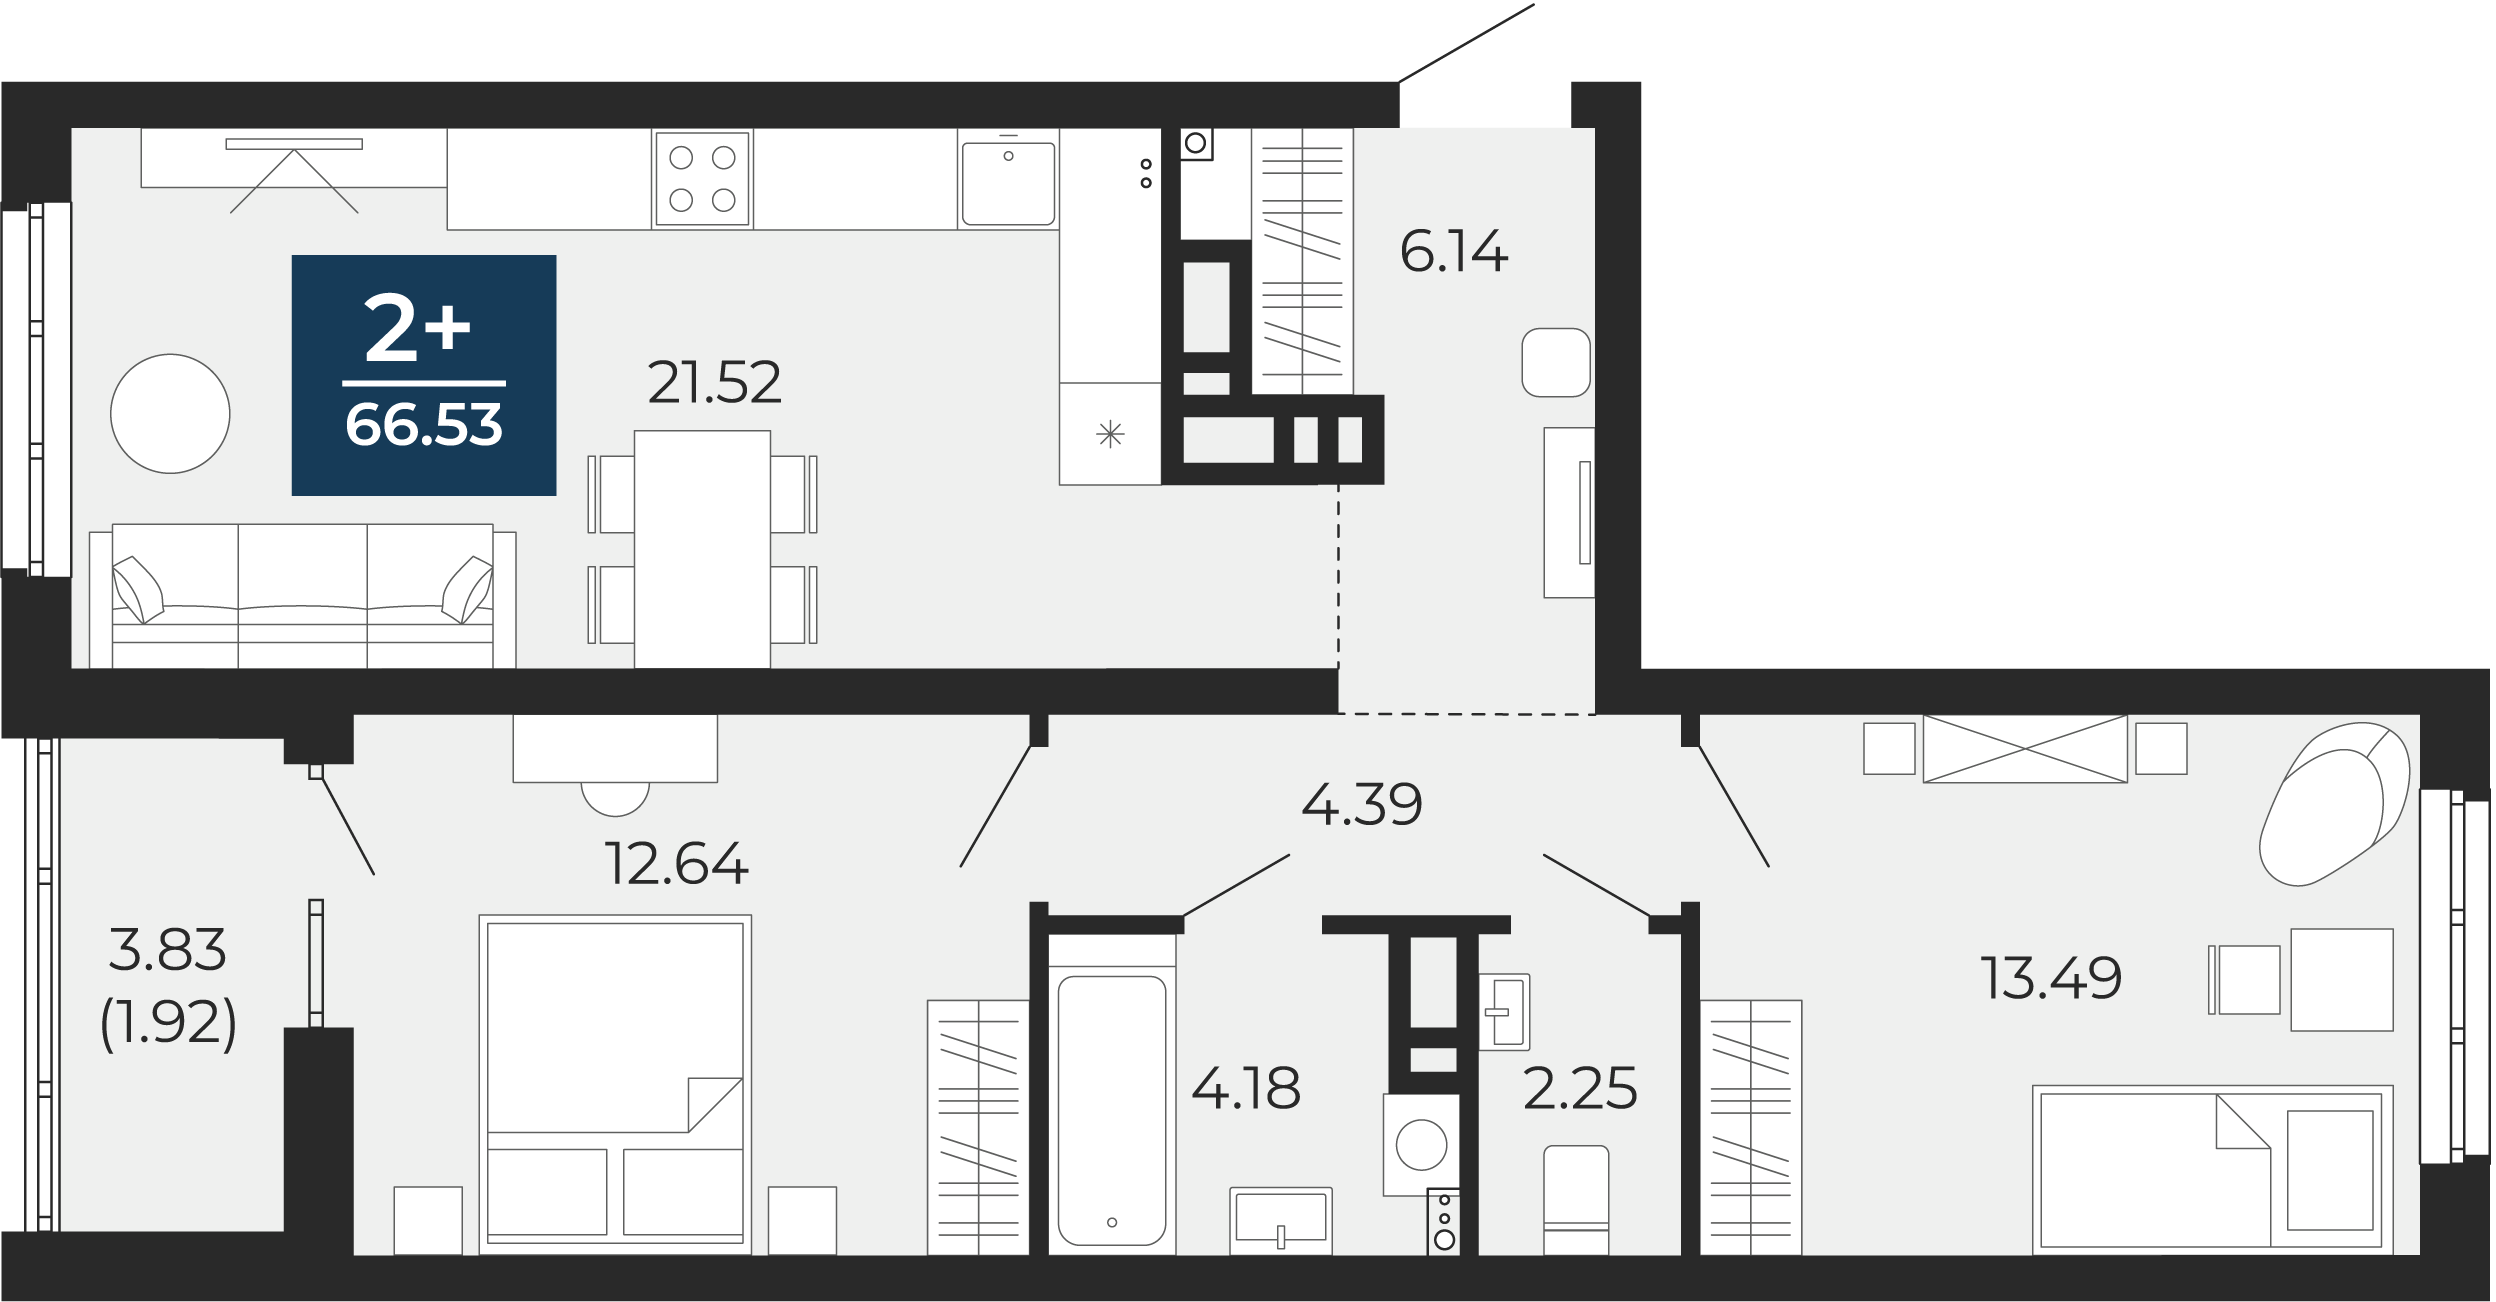 Квартира № 155, 2-комнатная, 66.53 кв. м, 8 этаж